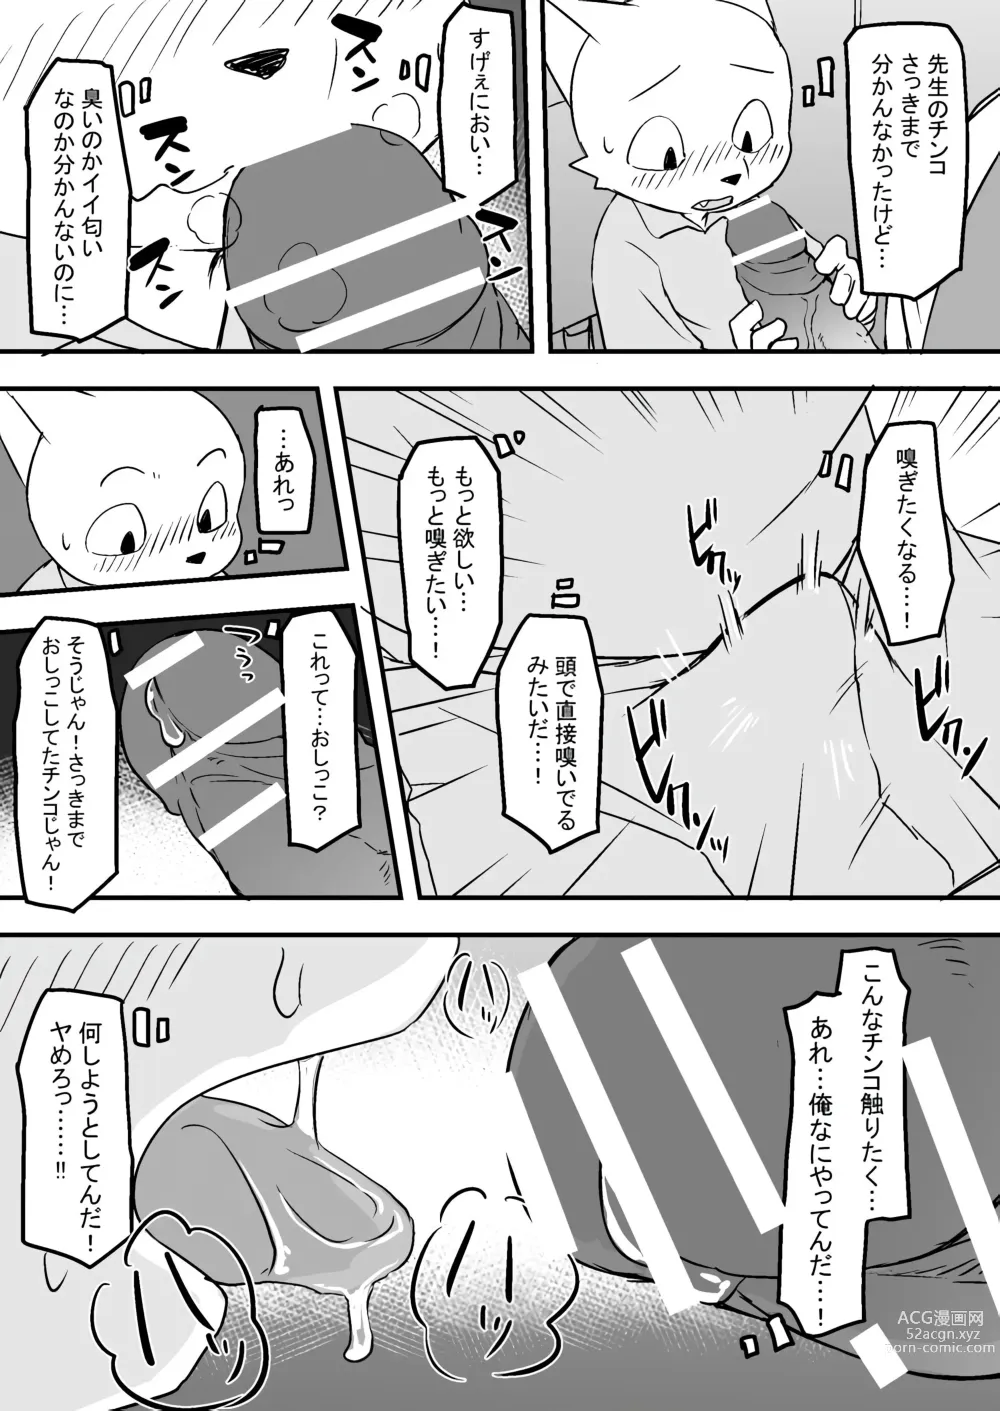 Page 7 of doujinshi Manmosu Marimo - Sensei Story #1